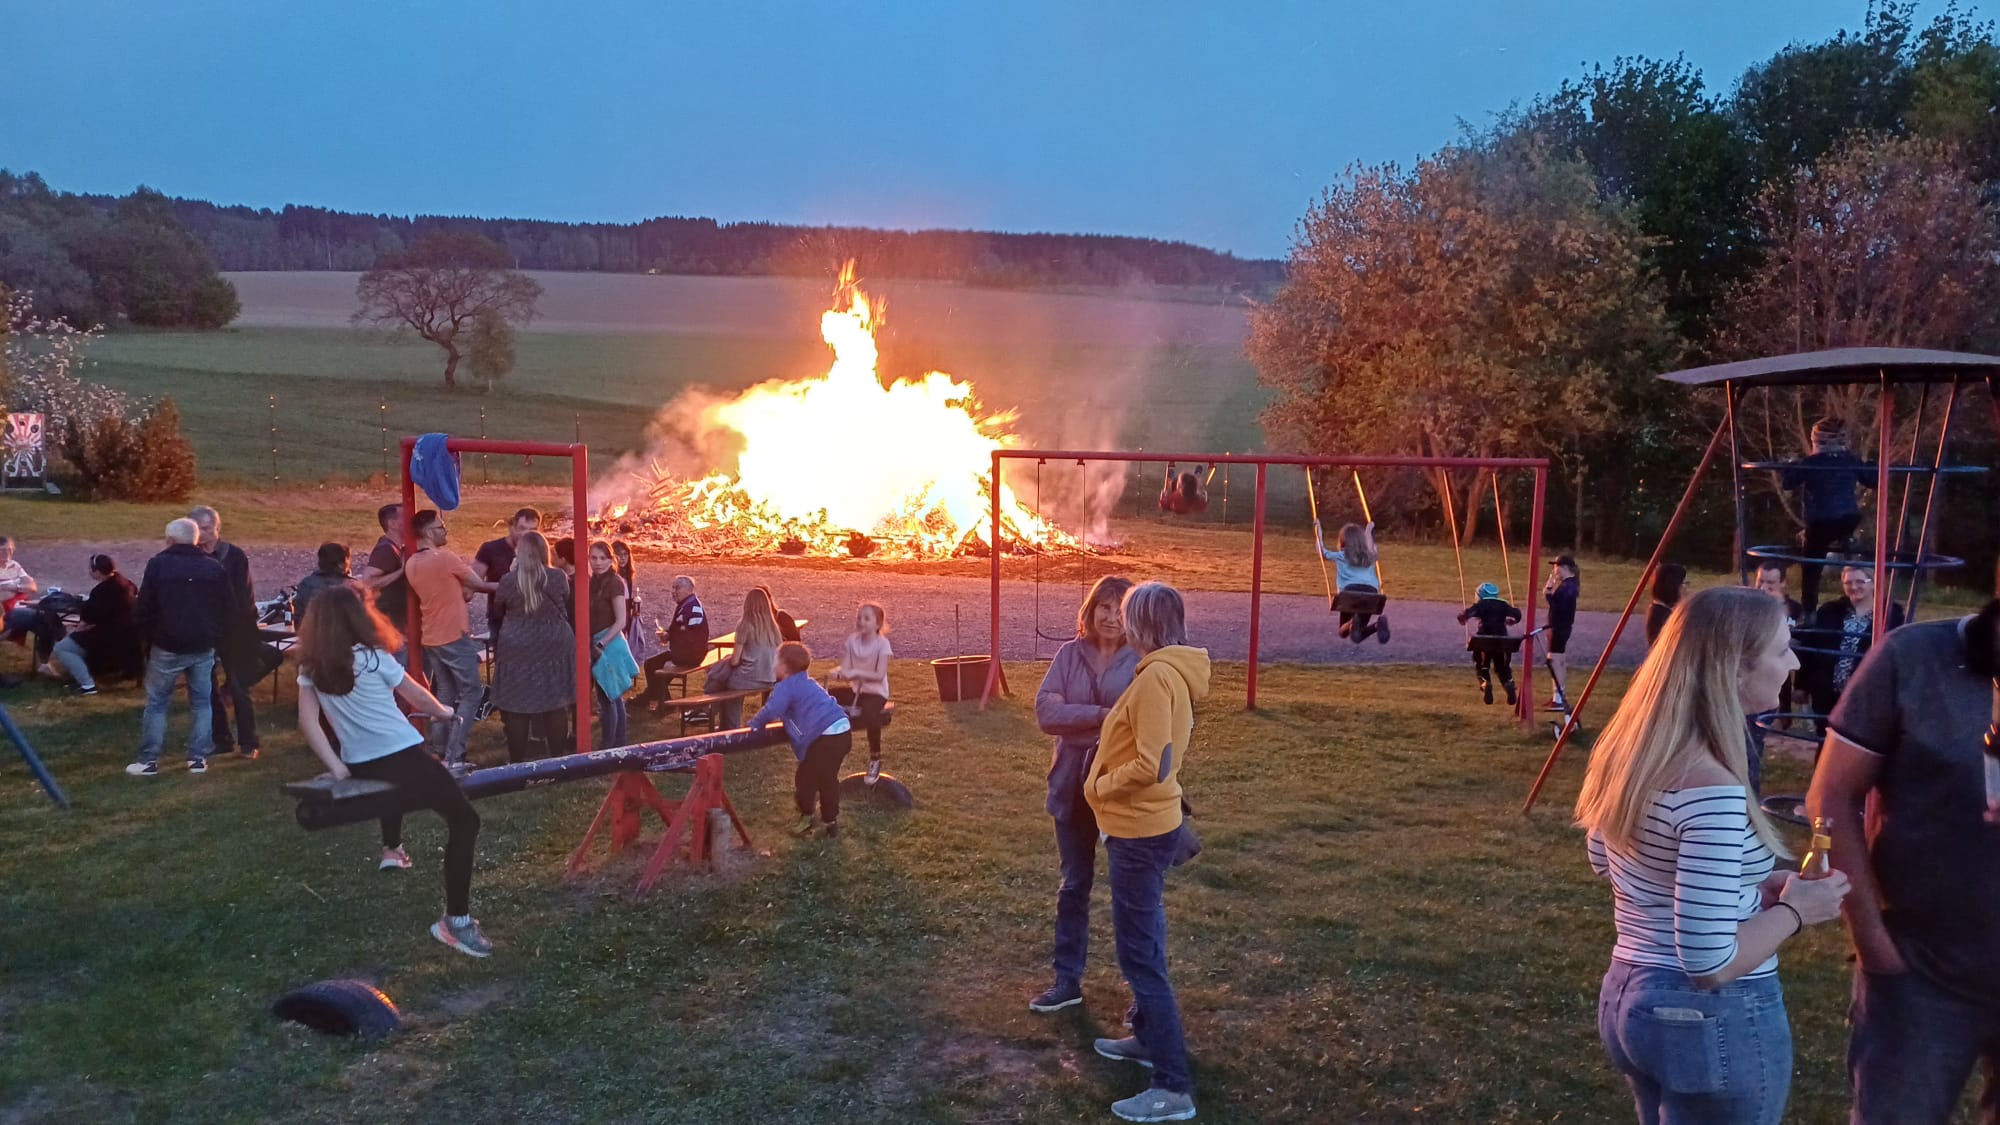 Brennendes Hexenfeuer neben Spielplatz mit Personen